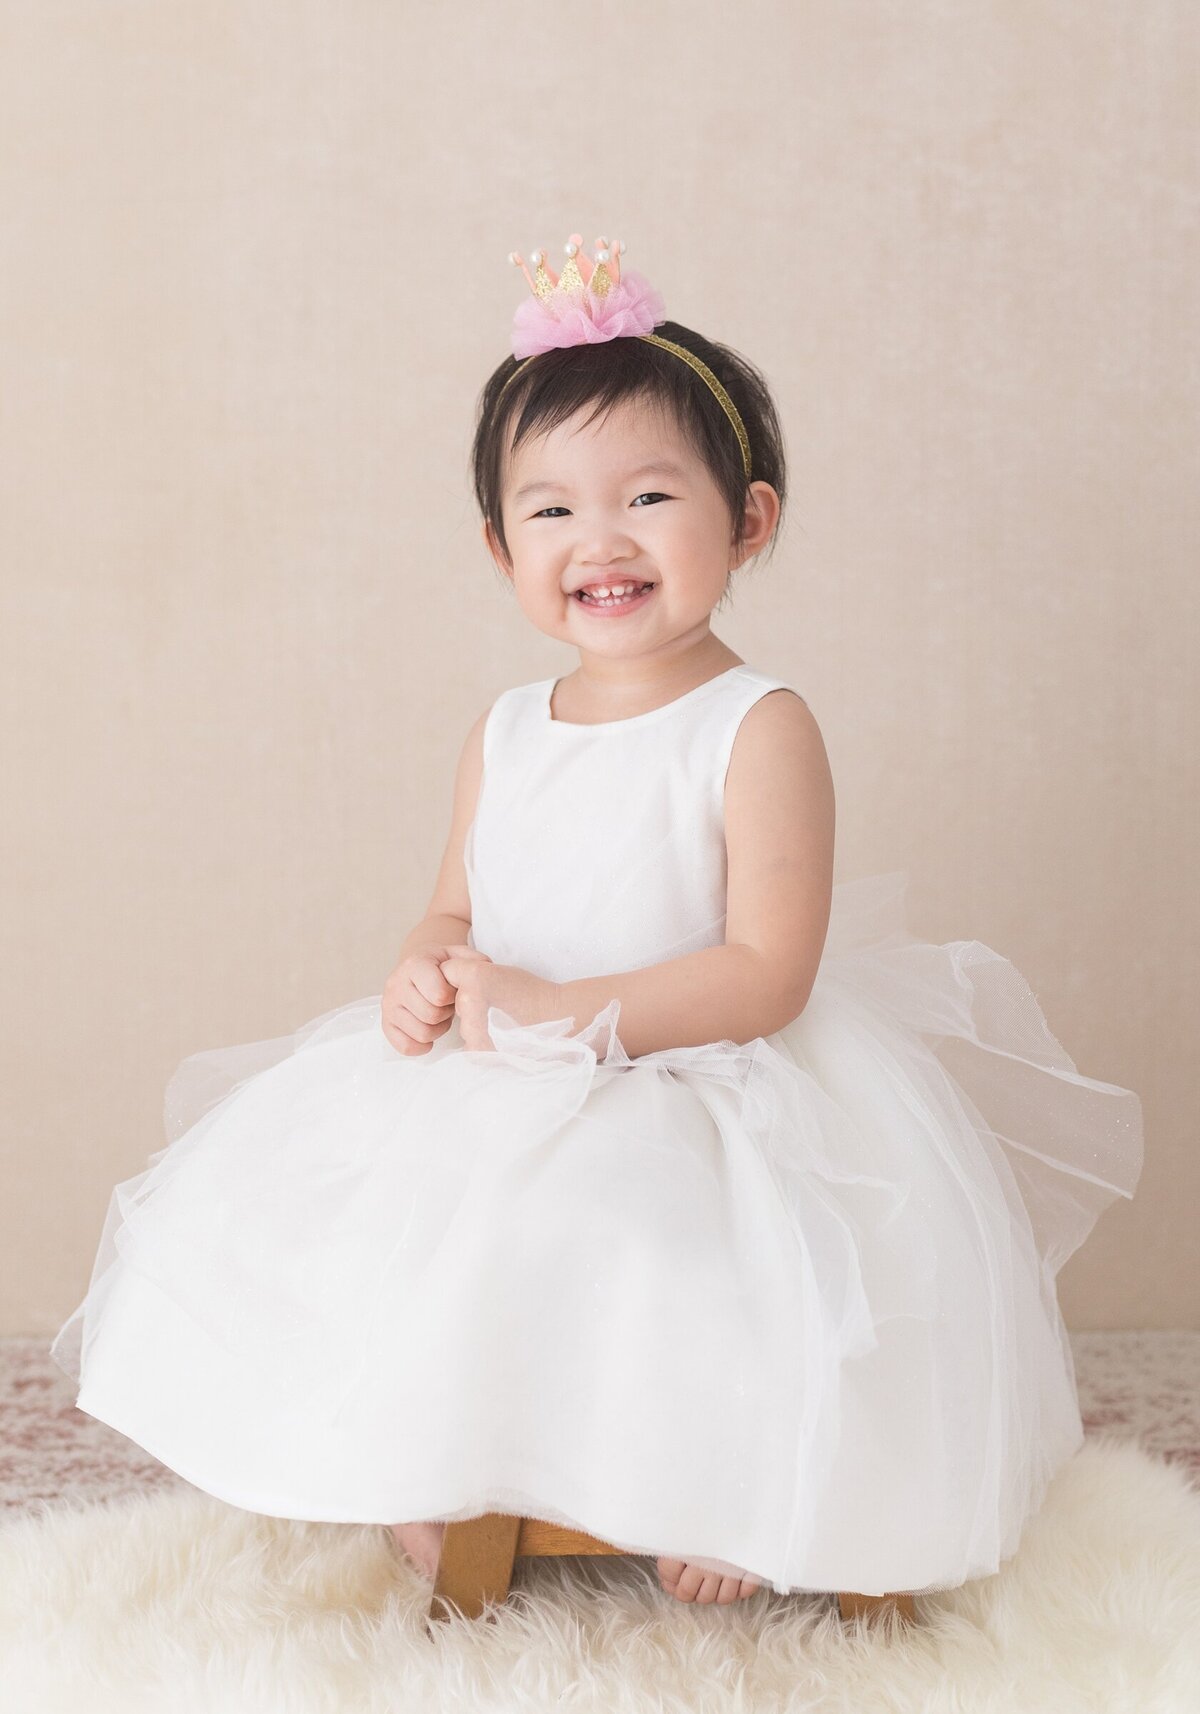 child-tutu-princess-crown-asian-adorable-cute-photography-portrait